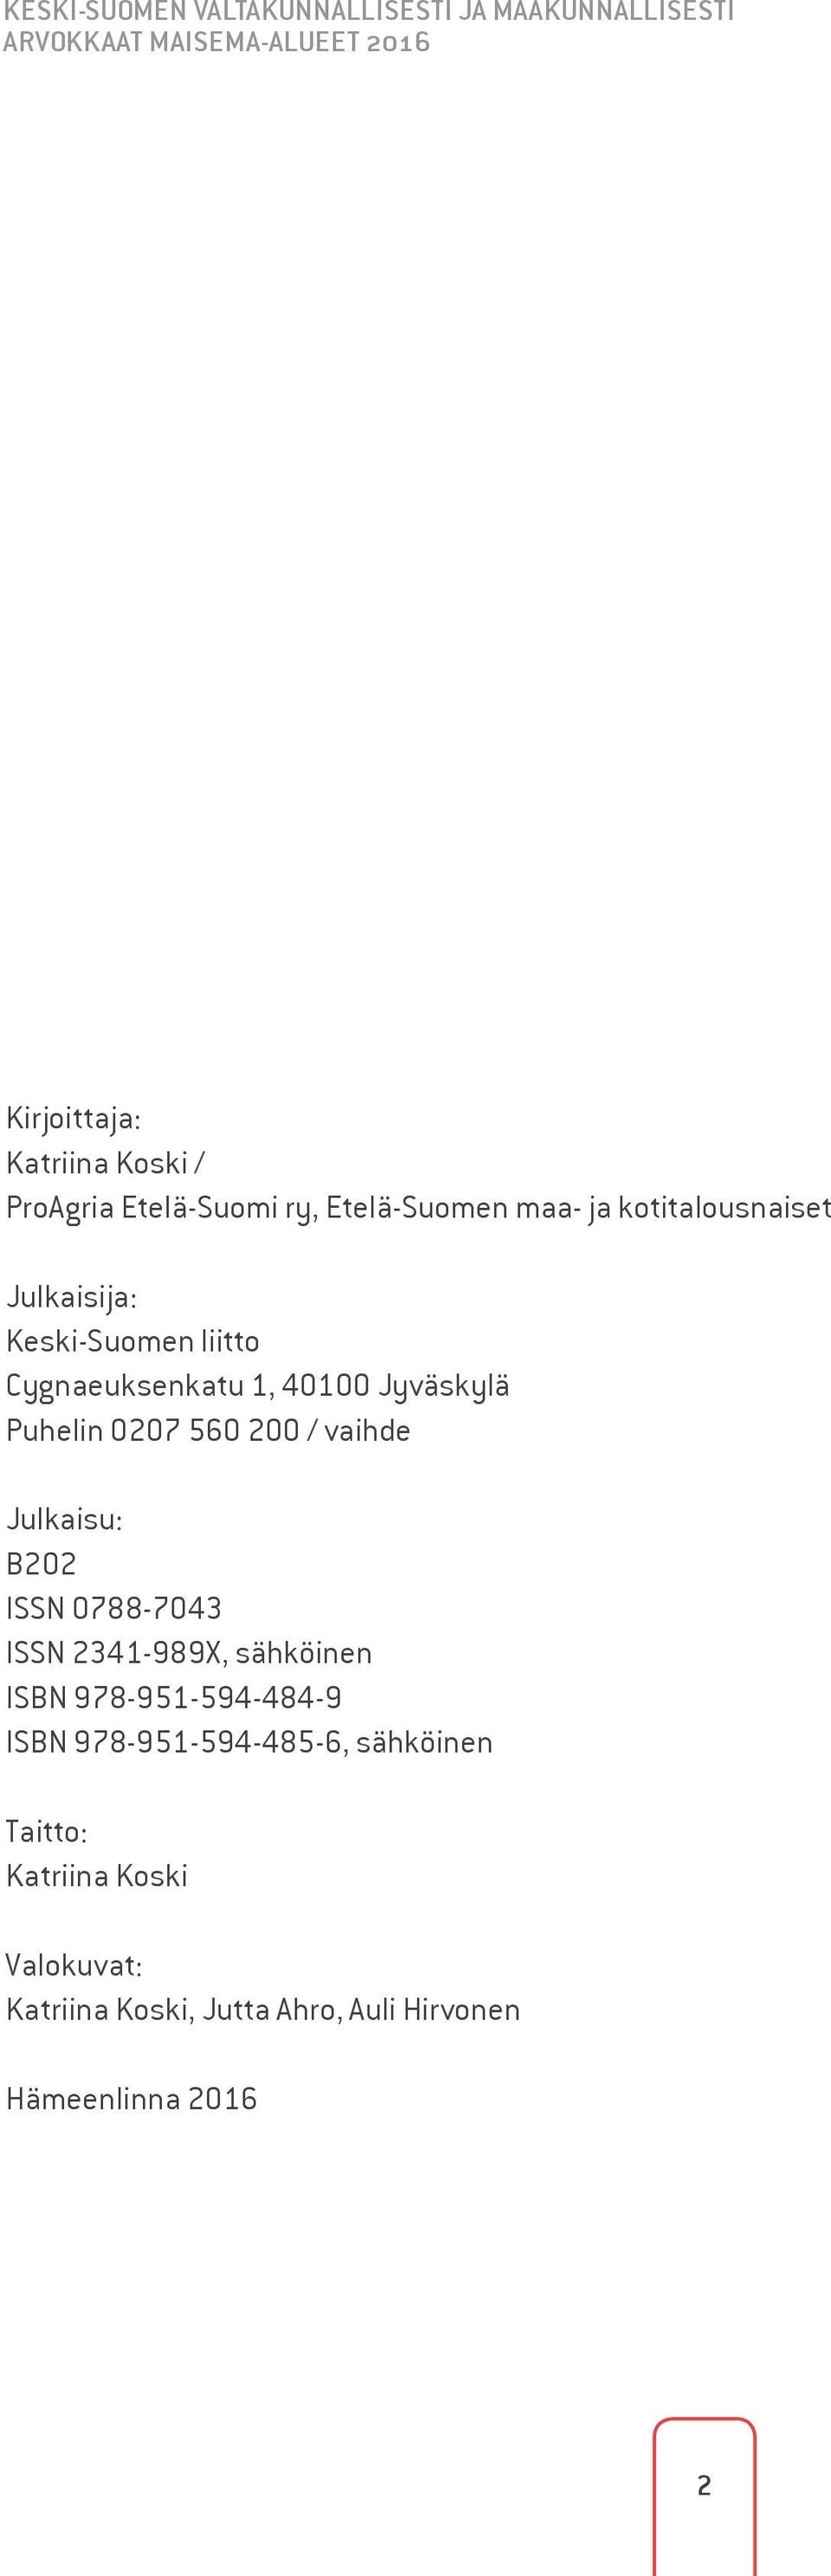 Jyväskylä Puhelin 0207 560 200 / vaihde Julkaisu: B202 ISSN 0788-7043 ISSN 2341-989X, sähköinen ISBN 978-951-594-484-9